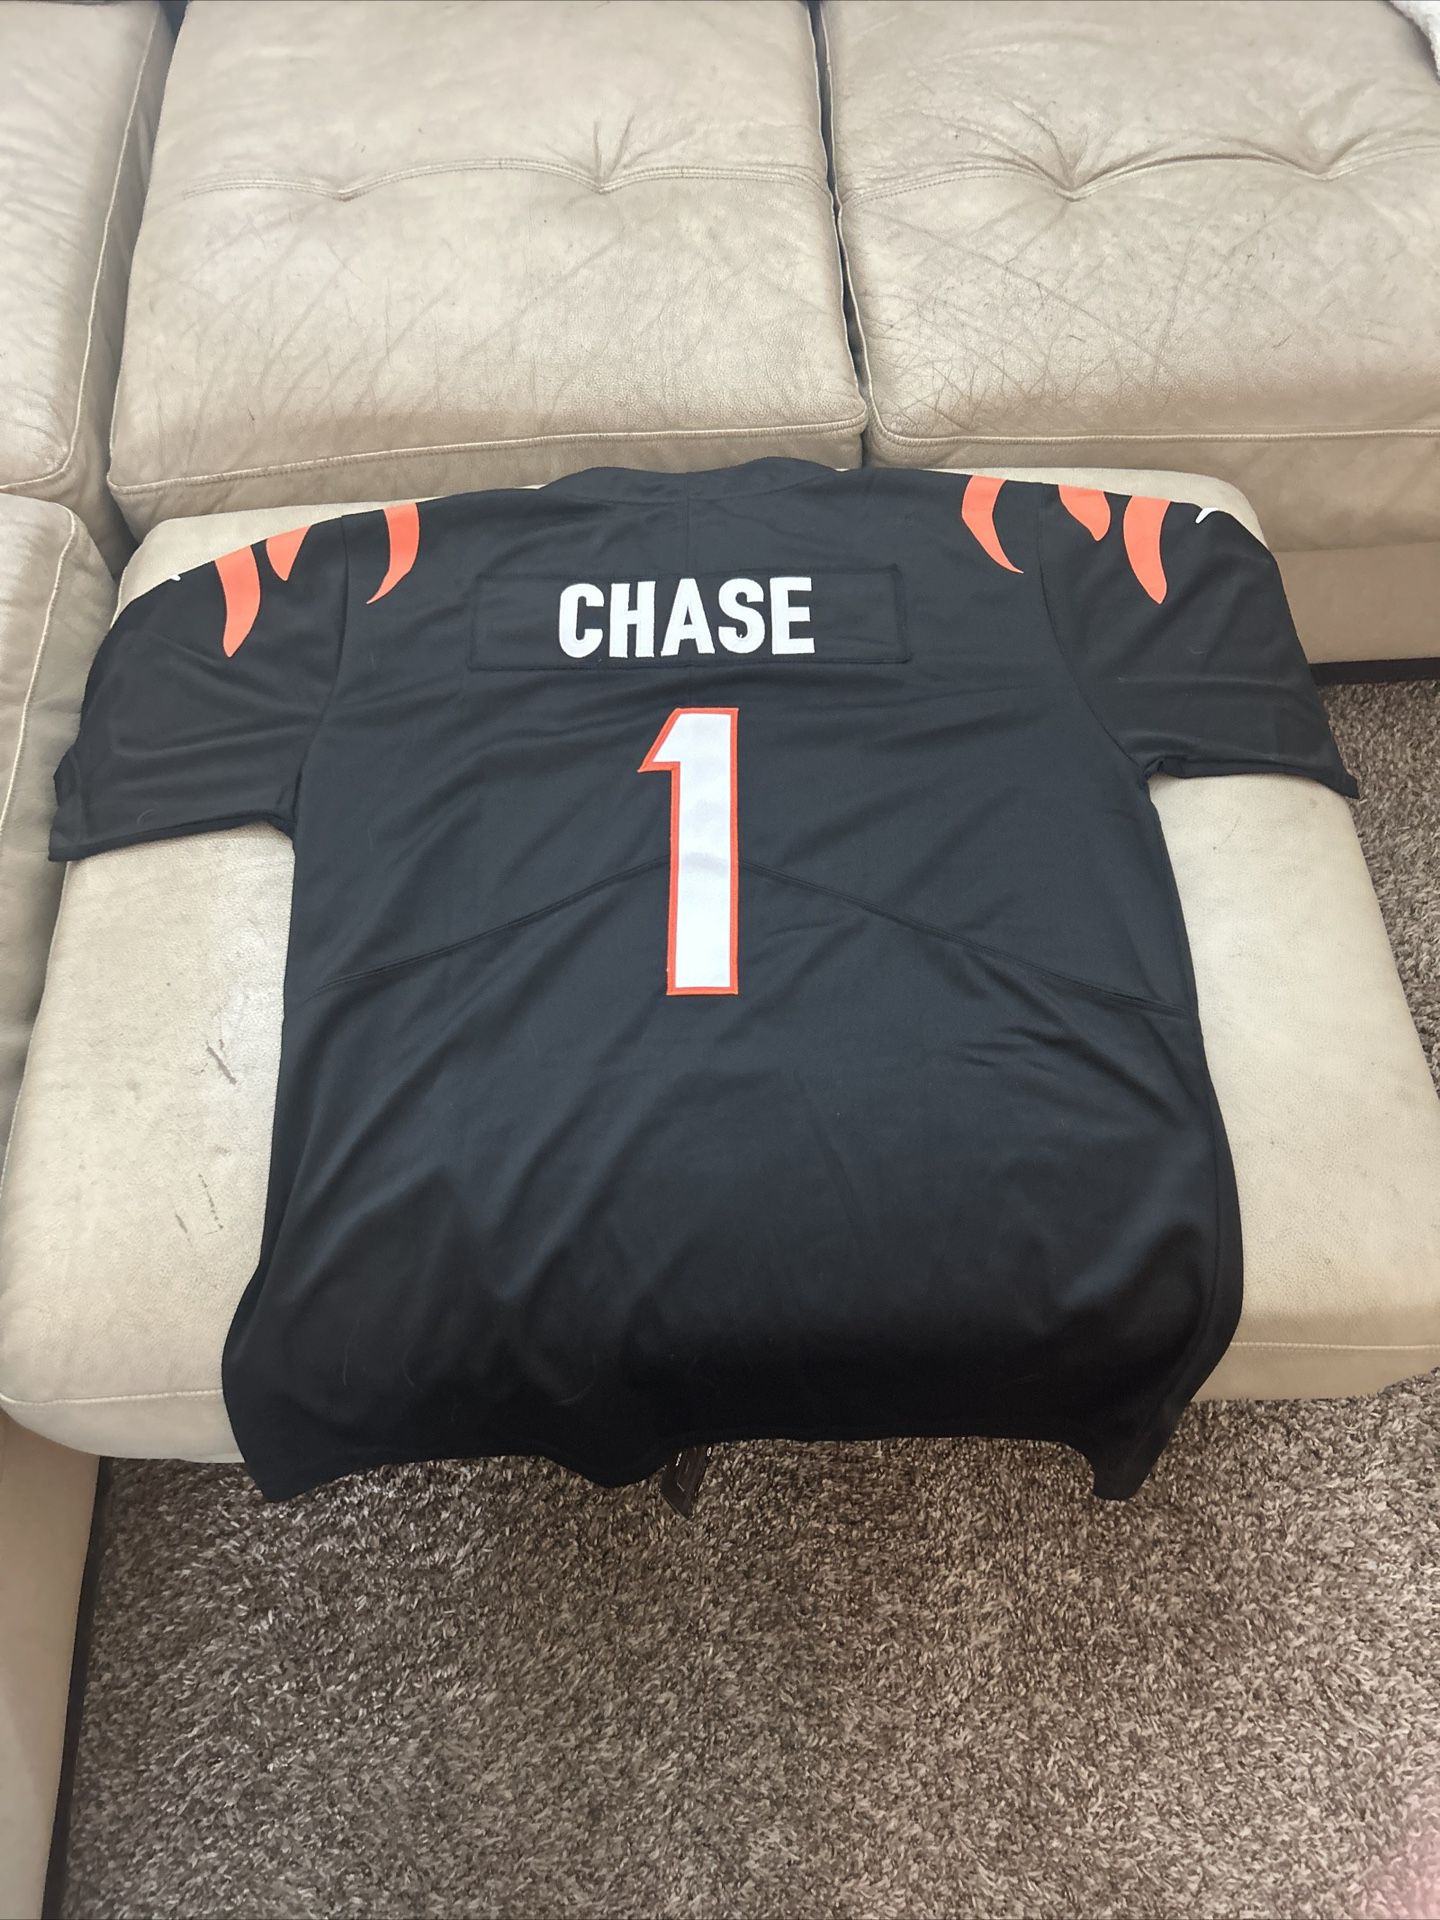 Ja’Marr Chase NFL Jersey 